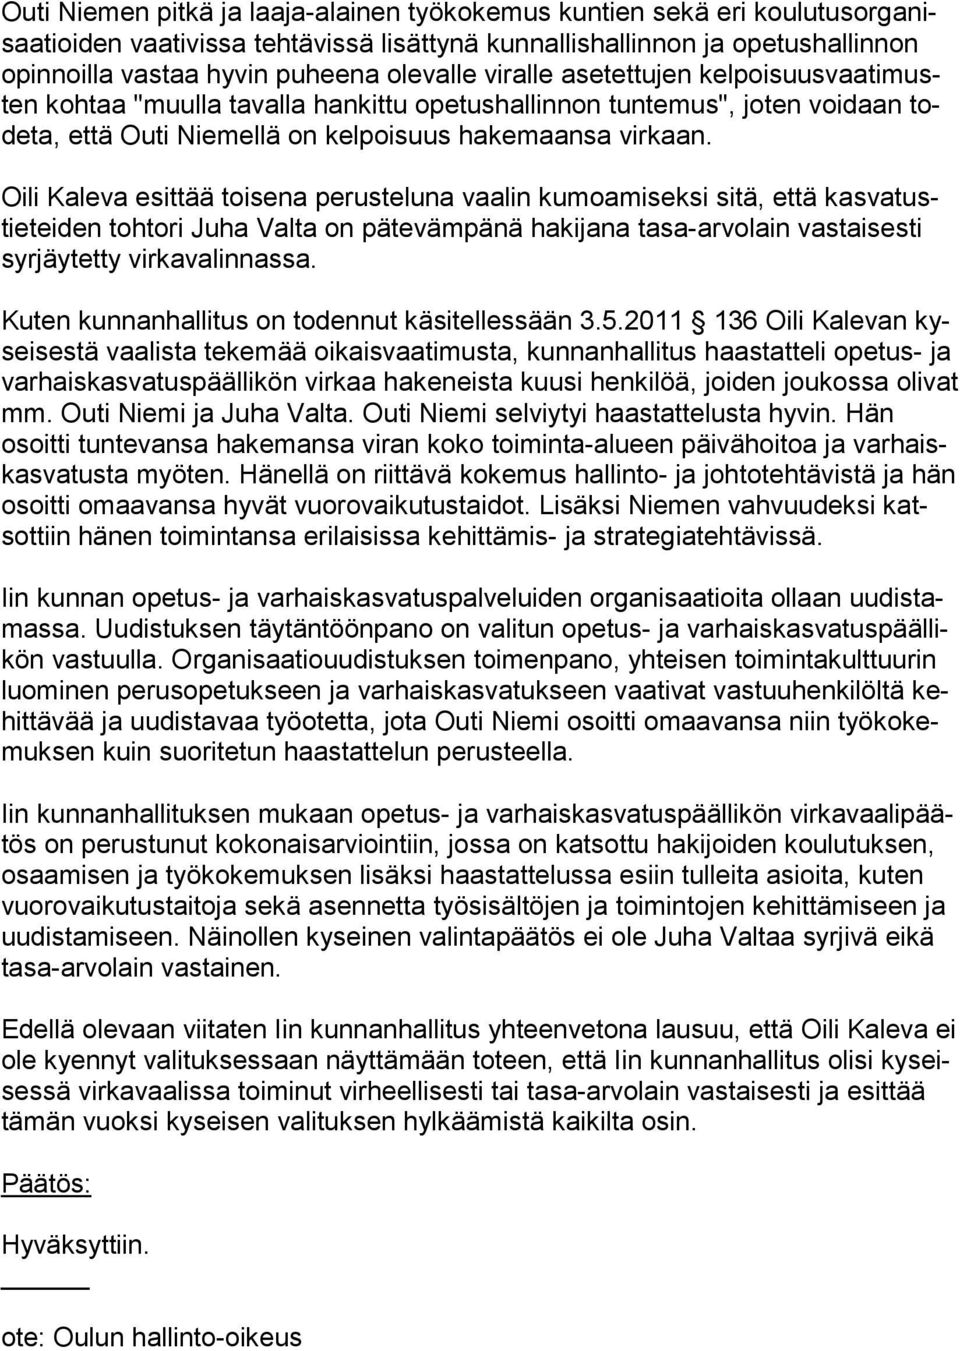 Oili Kaleva esittää toisena perusteluna vaalin kumoamiseksi sitä, että kasvatustie teiden tohtori Juha Valta on pätevämpänä hakijana tasa-arvolain vastaisesti syr jäytetty virkavalinnassa.